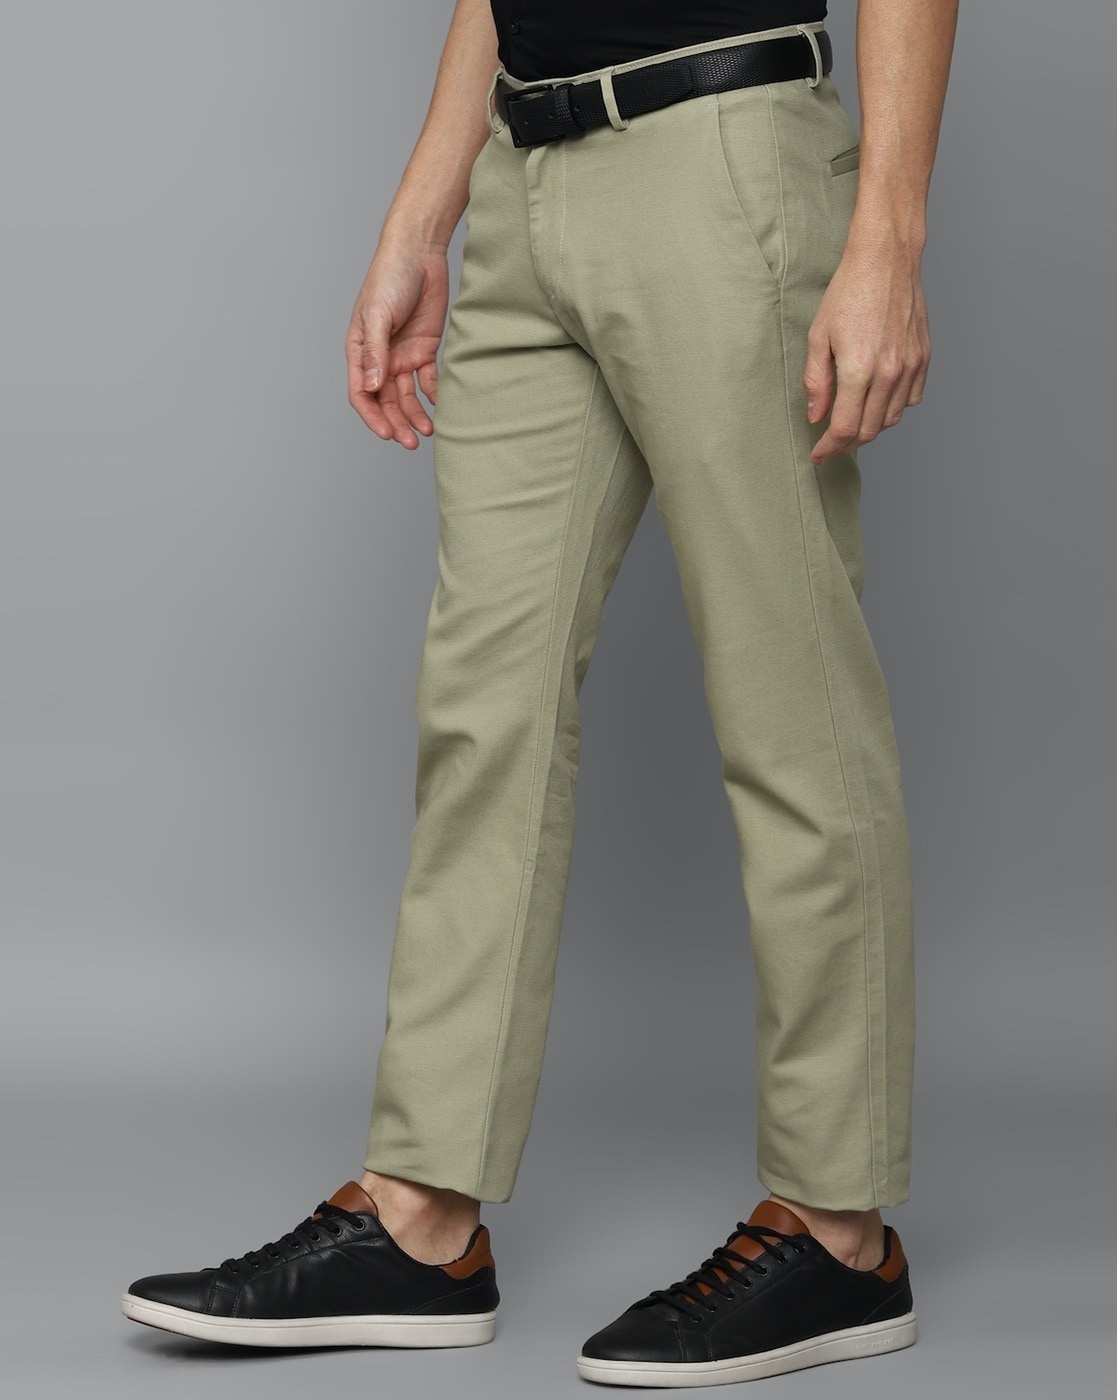 Allen Solly Trousers - Buy Allen Solly Trousers & Pants Online